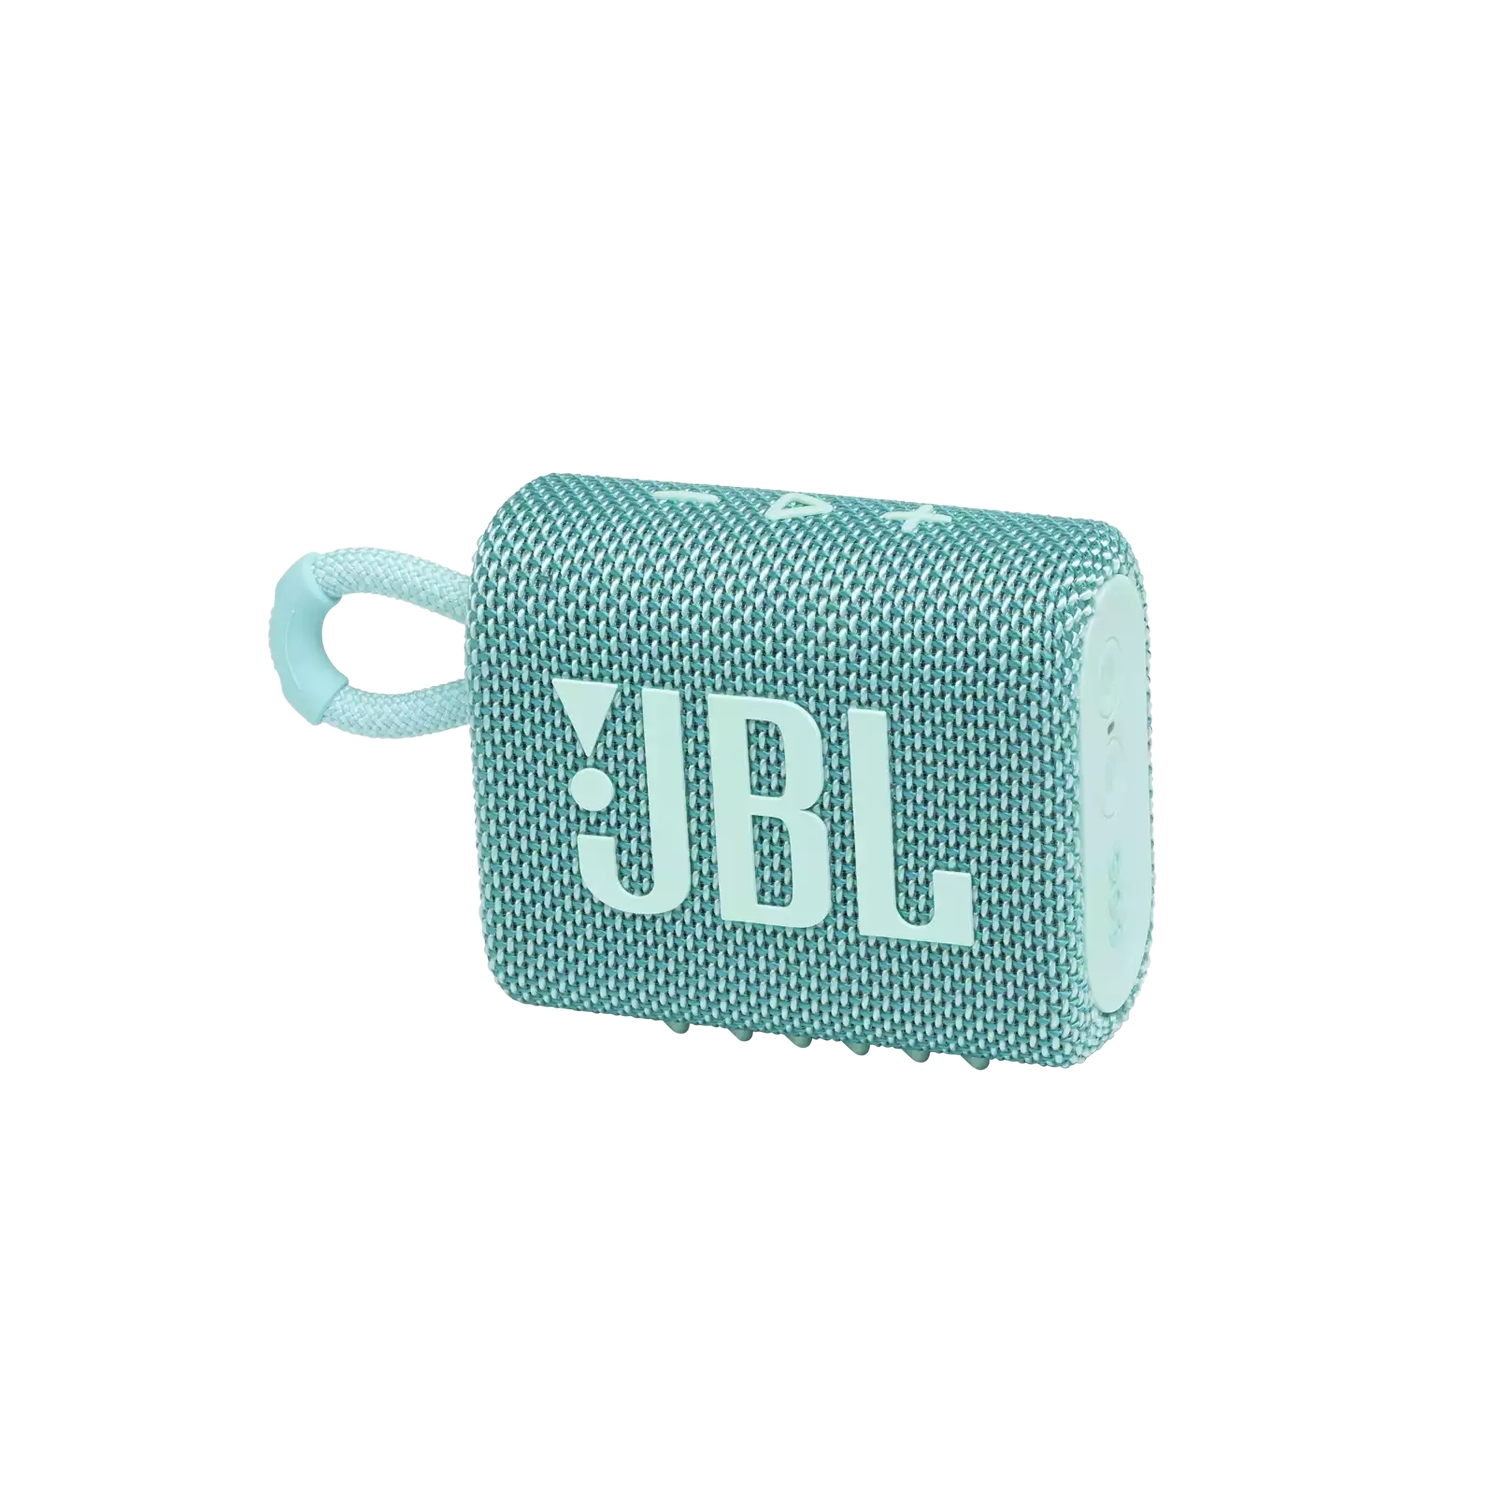 Портативная акустика JBL GO 3 бирюзовая портативная акустика jbl go 3 blue